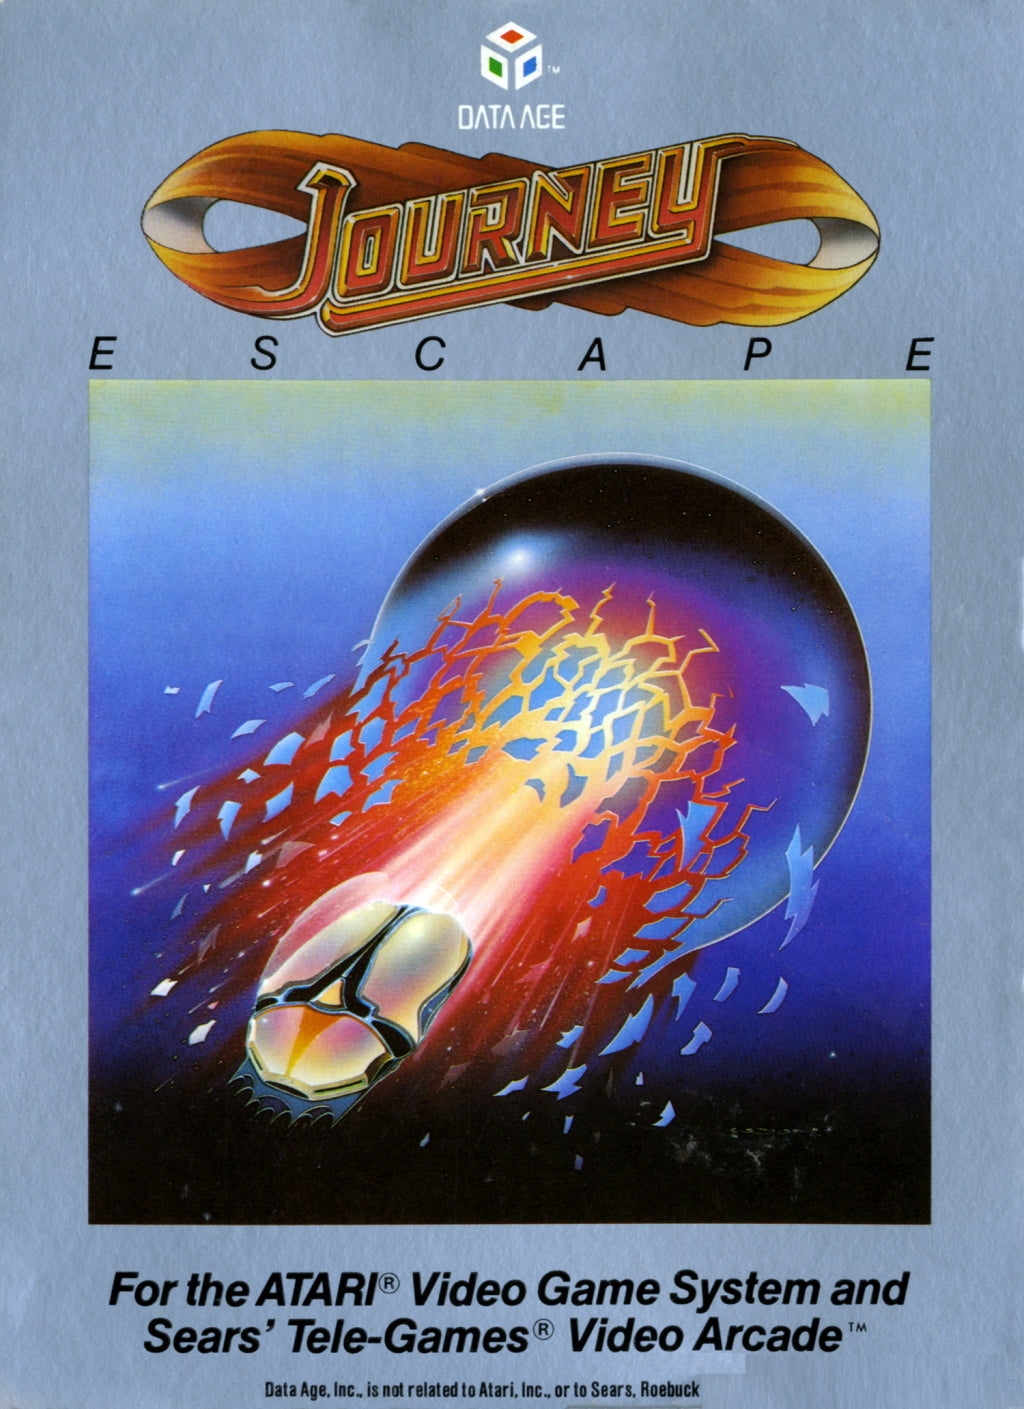 Journey Escape - Atari 2600 [Pre-Owned] Video Games Data Age   